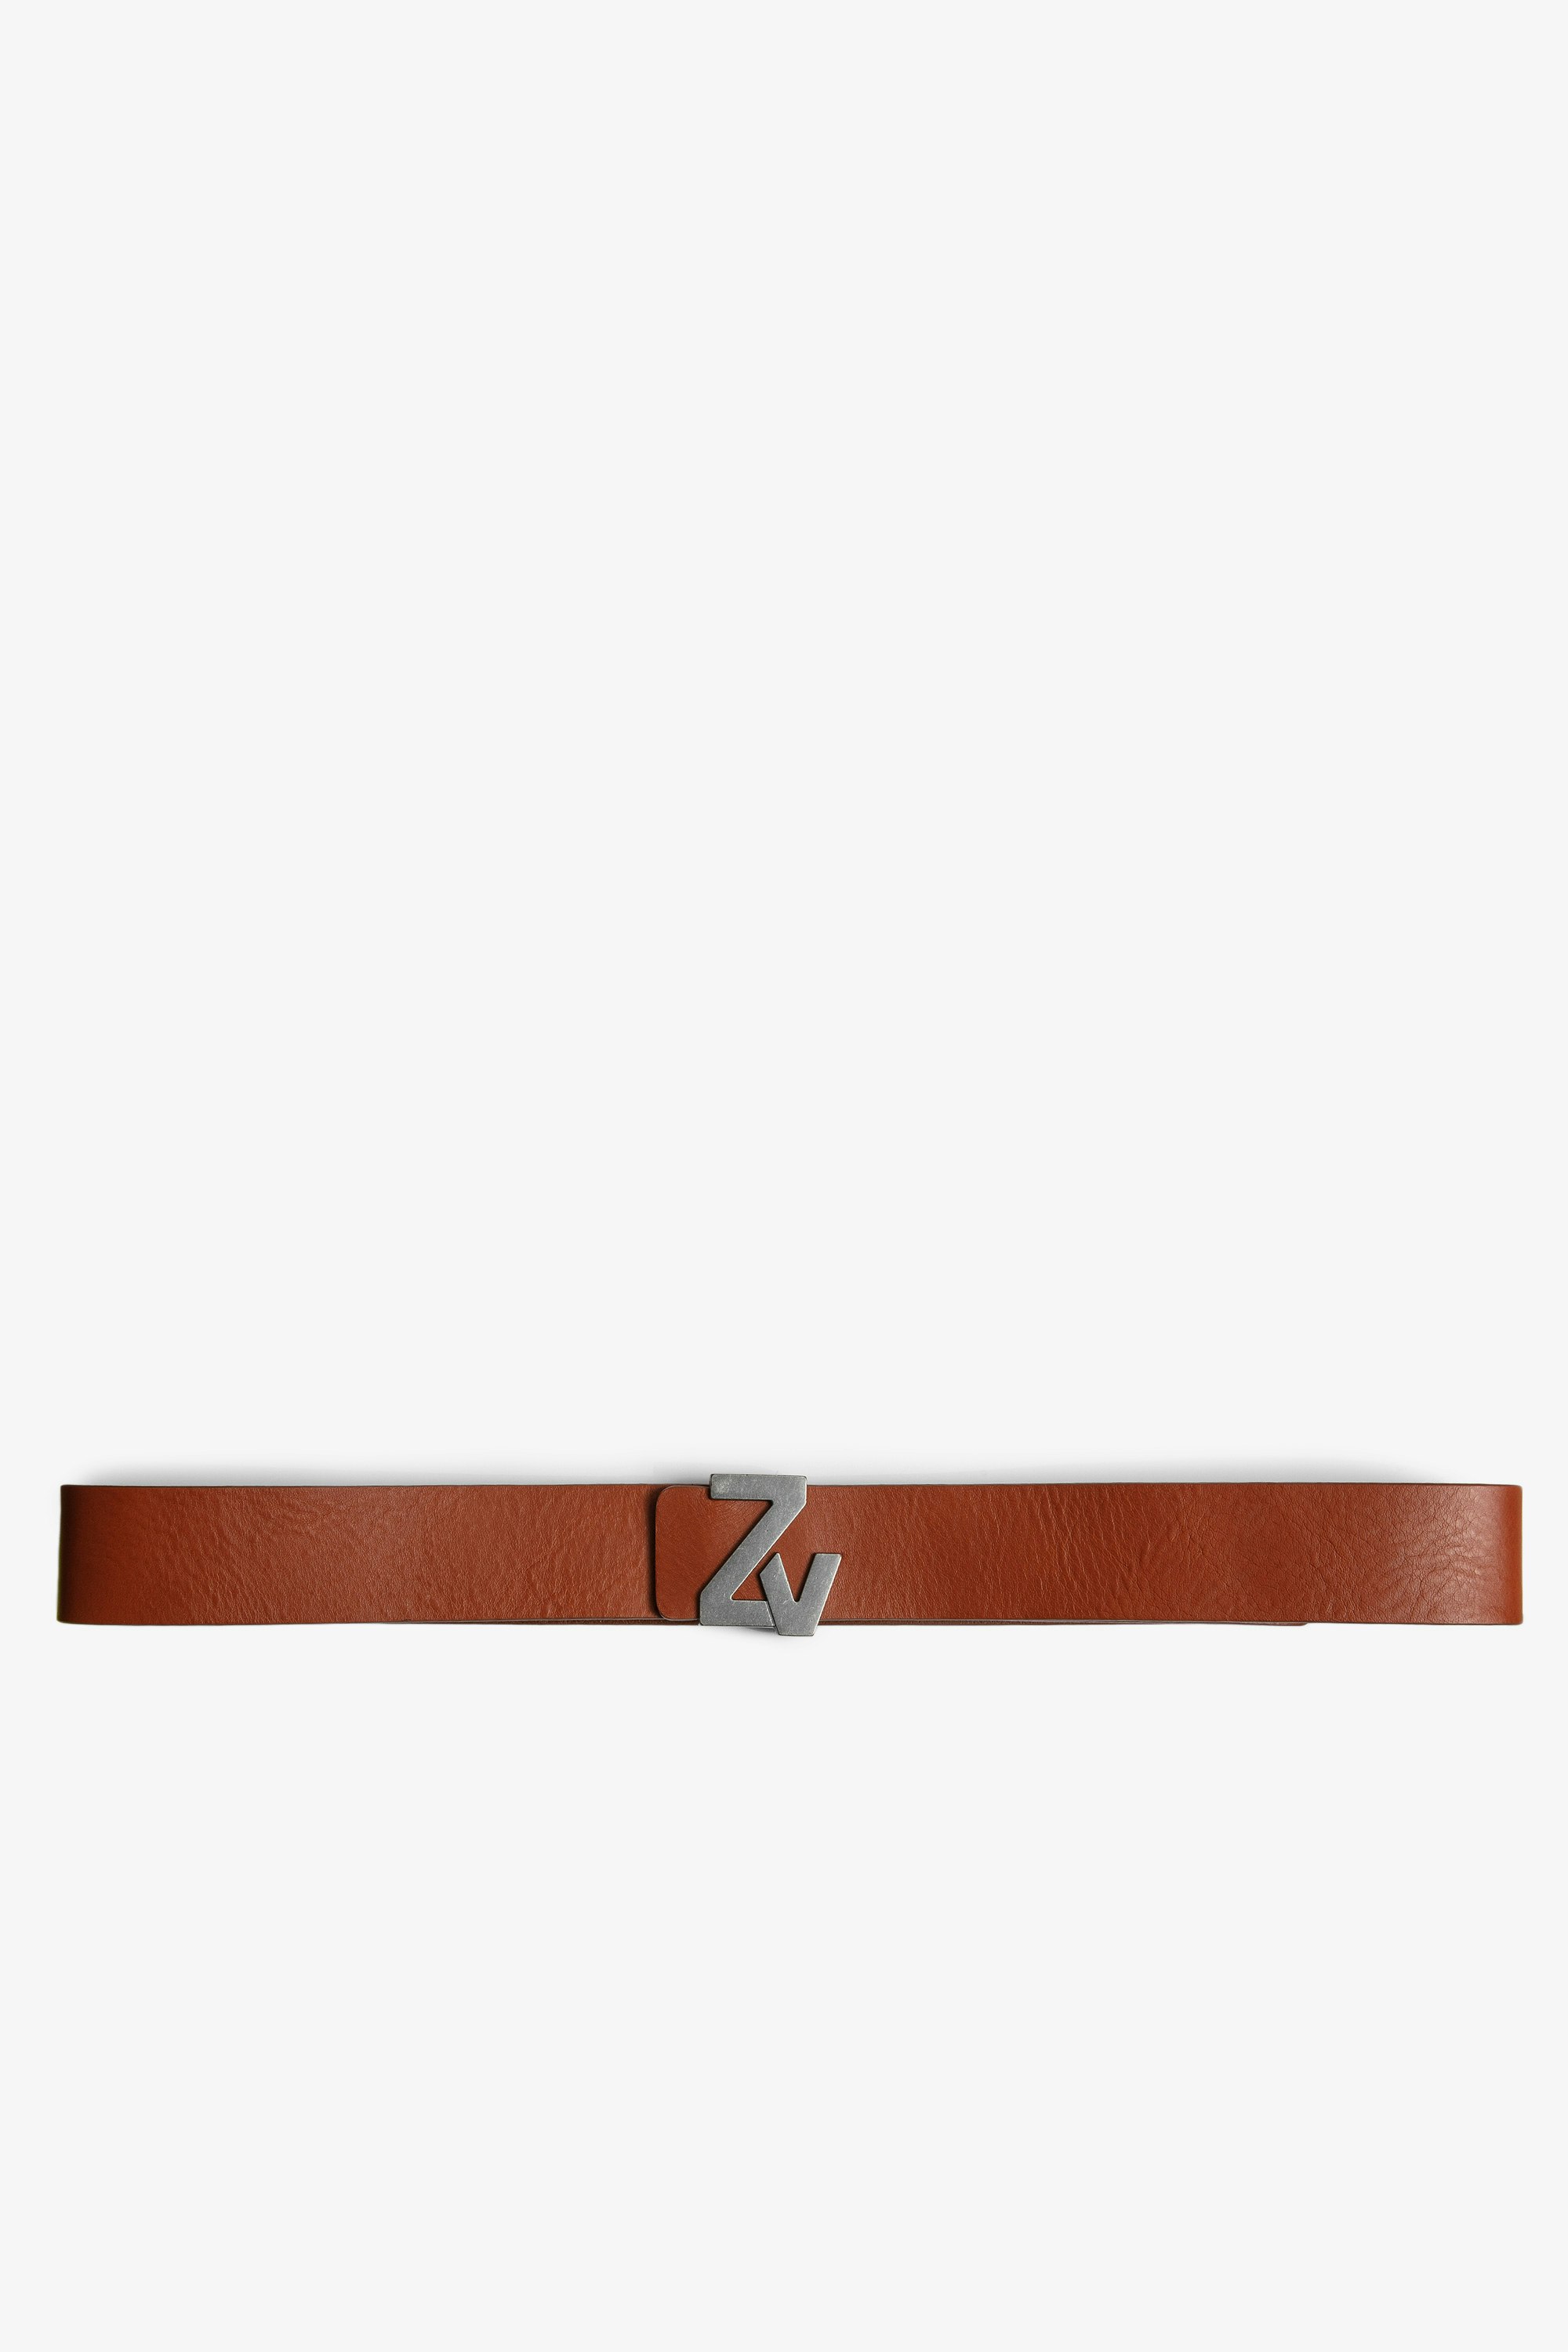 ZV Initiale La Belt Men's cognac leather belt with ZV buckle